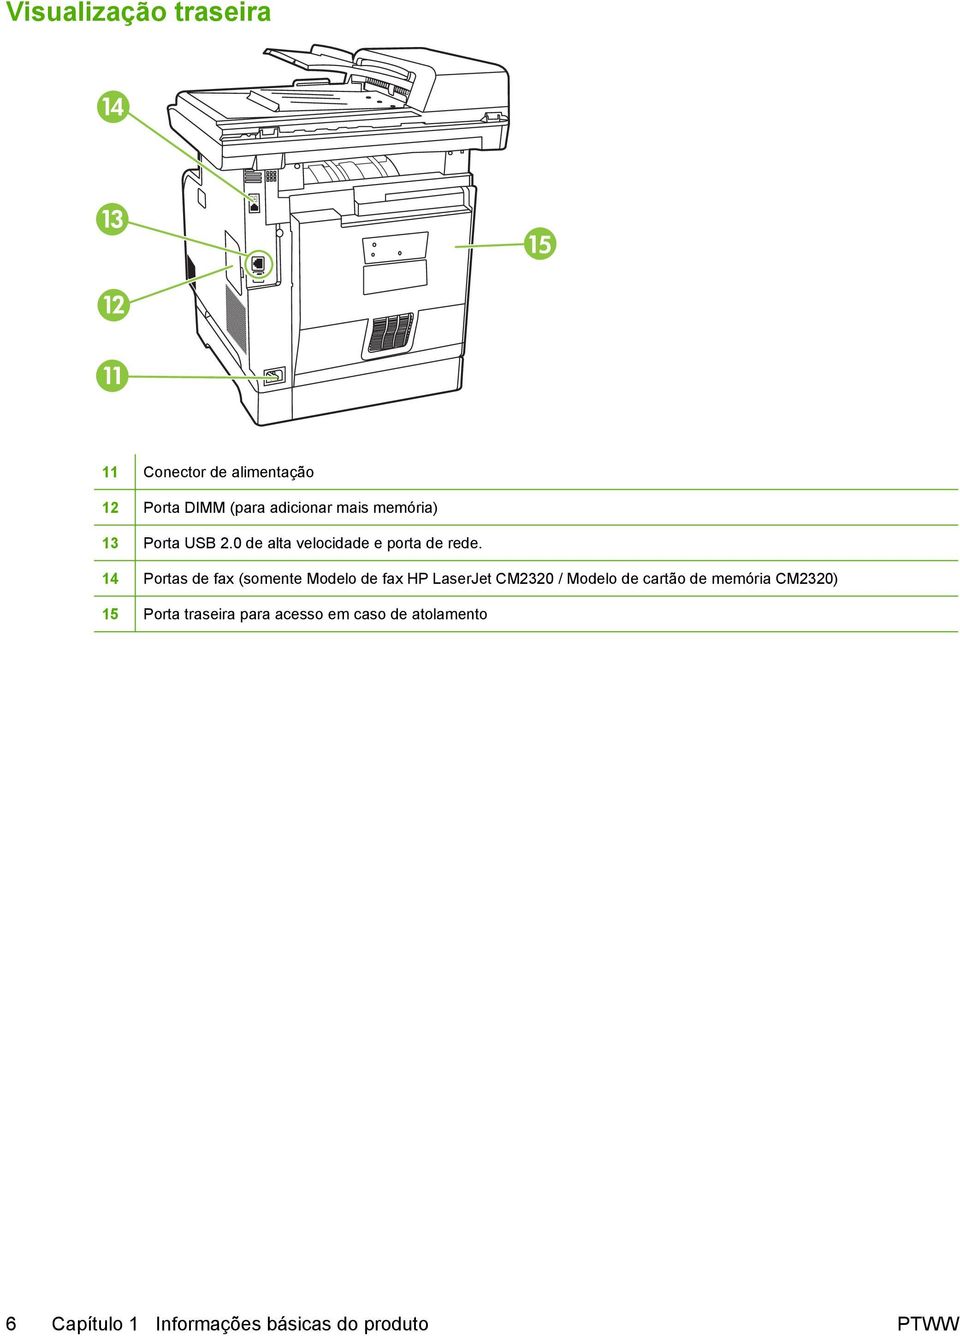 14 Portas de fax (somente Modelo de fax HP LaserJet CM2320 / Modelo de cartão de